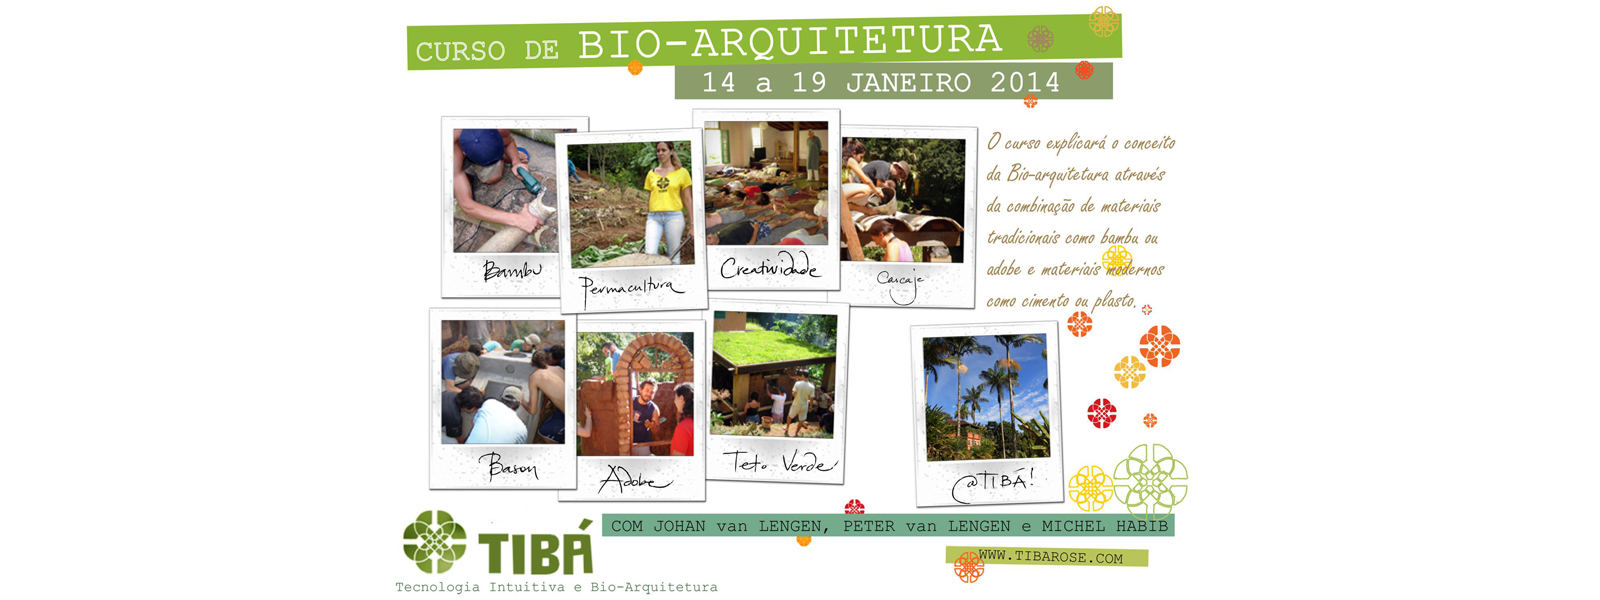 Curso de Bioarquitetura no Tibá janeiro 2014